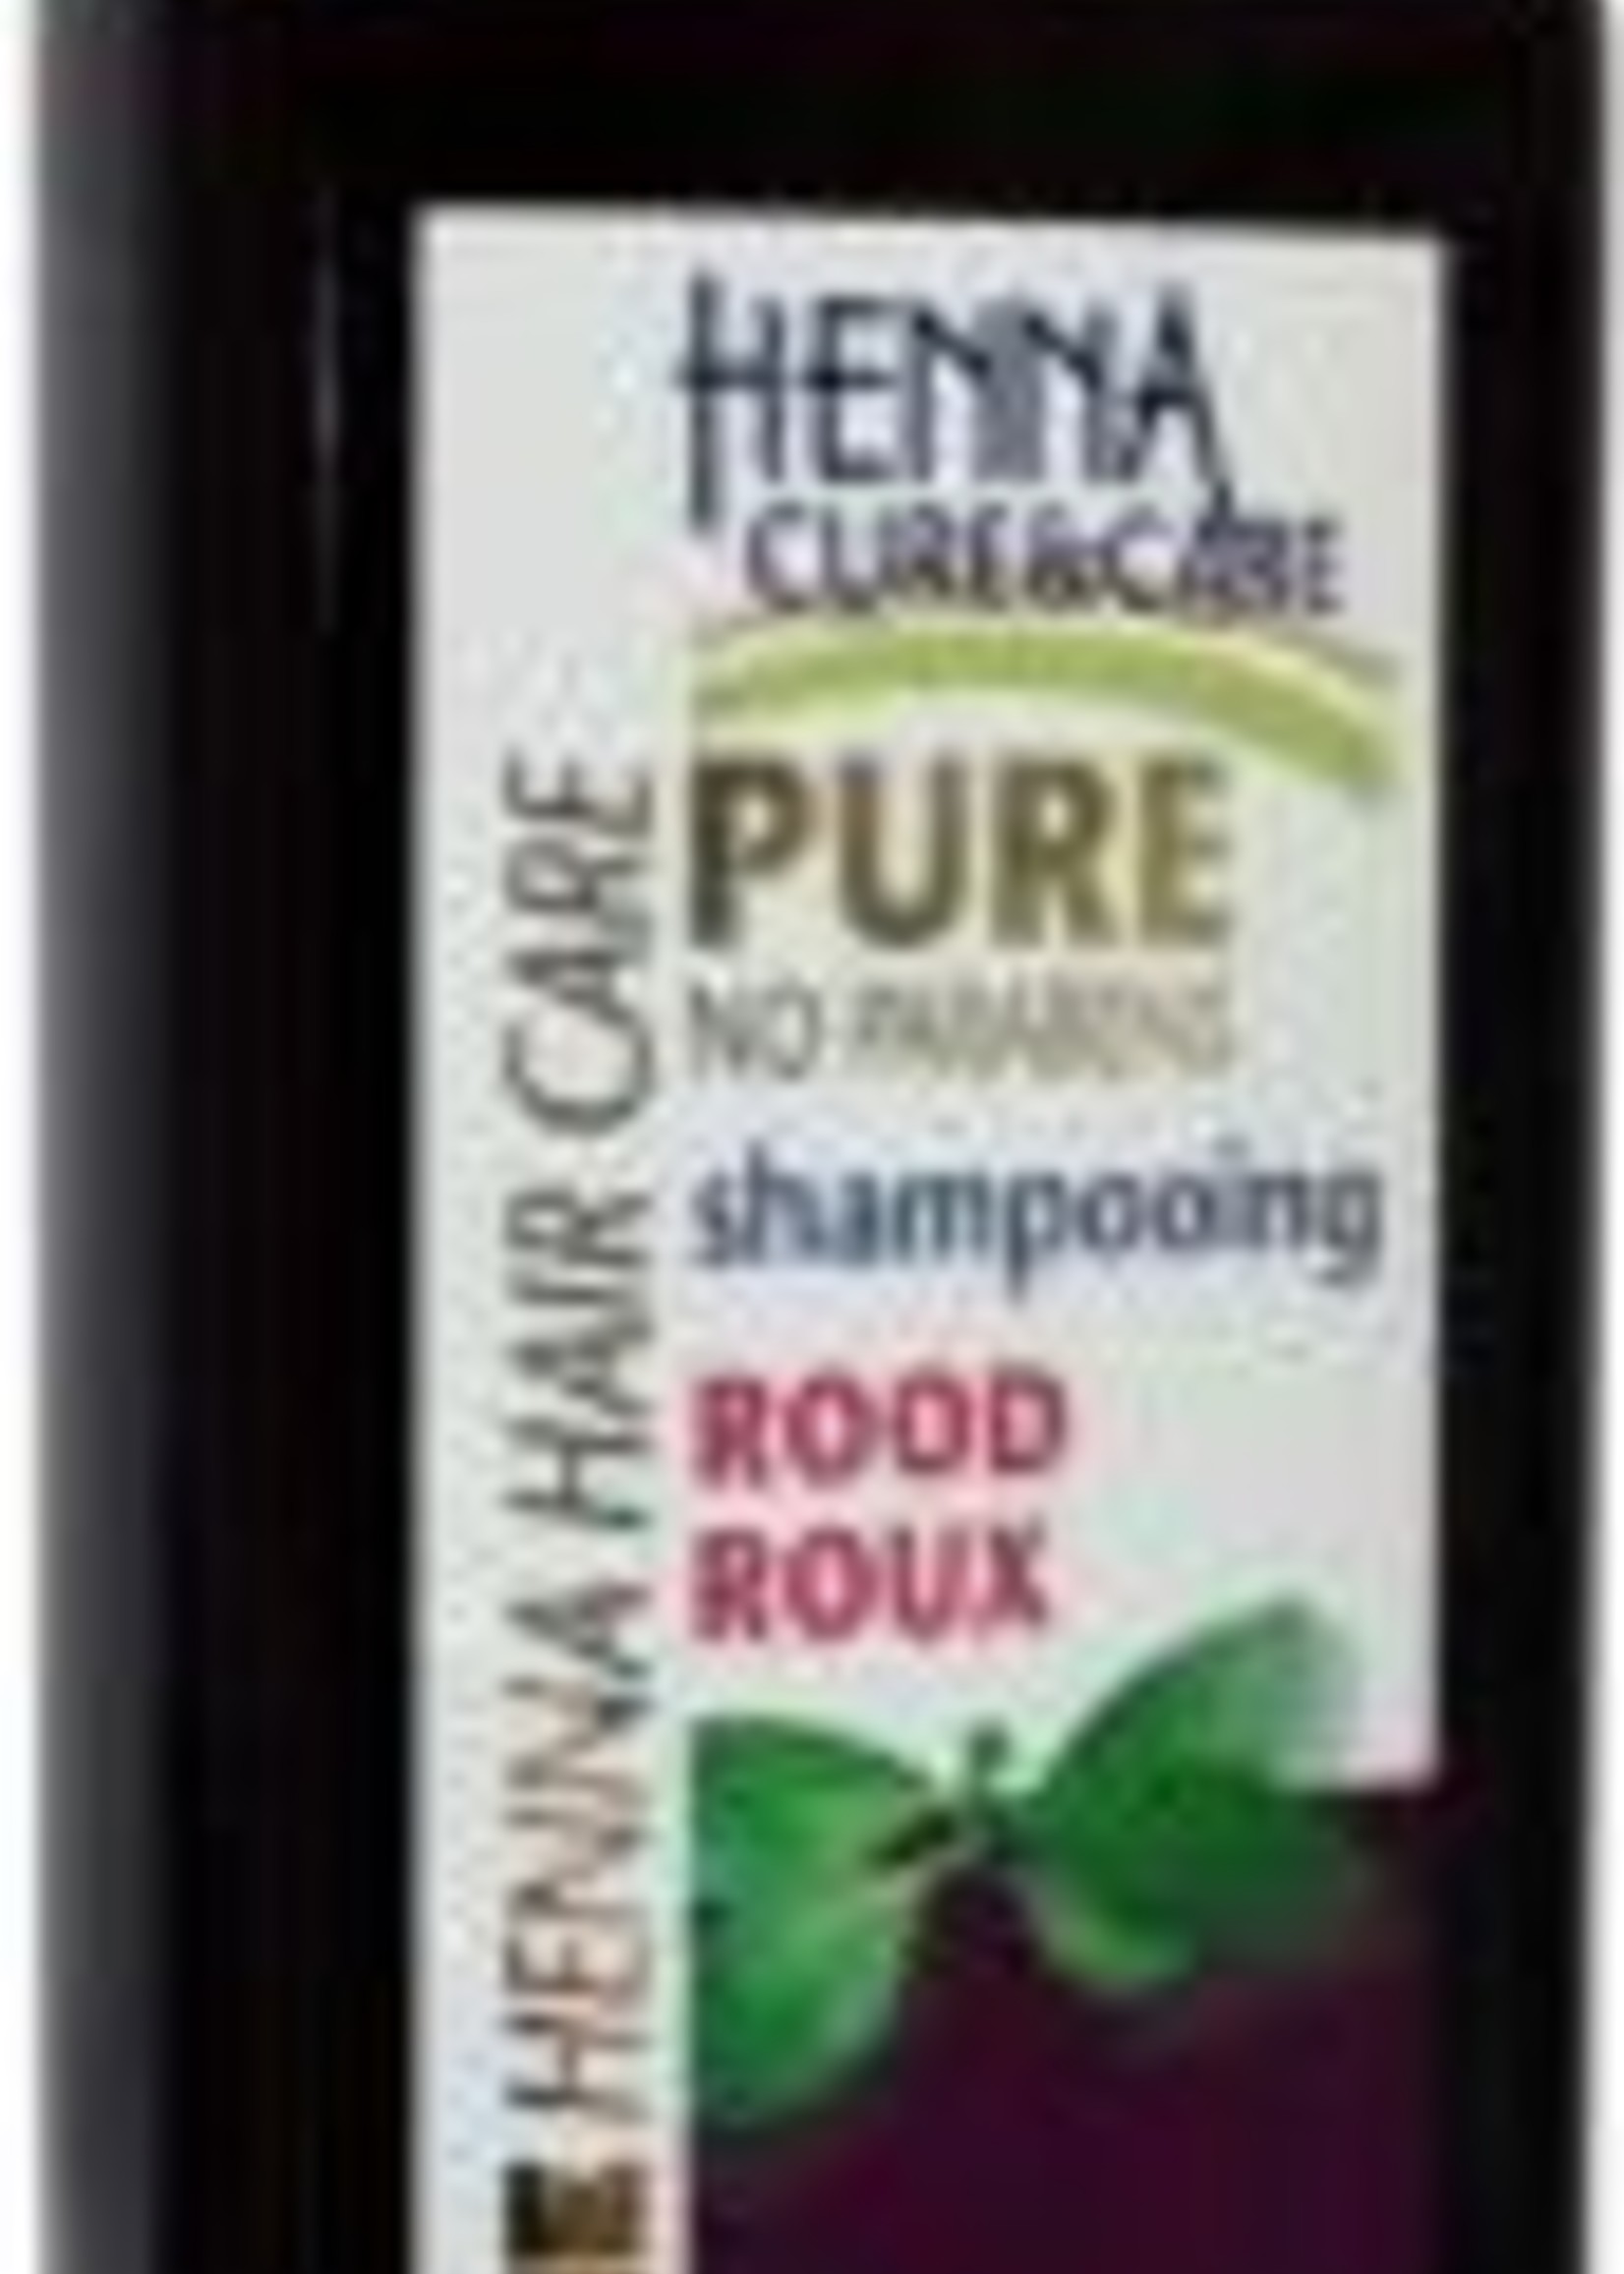 Evi Line Shampoo Rood Henna Cure & Care 400ml